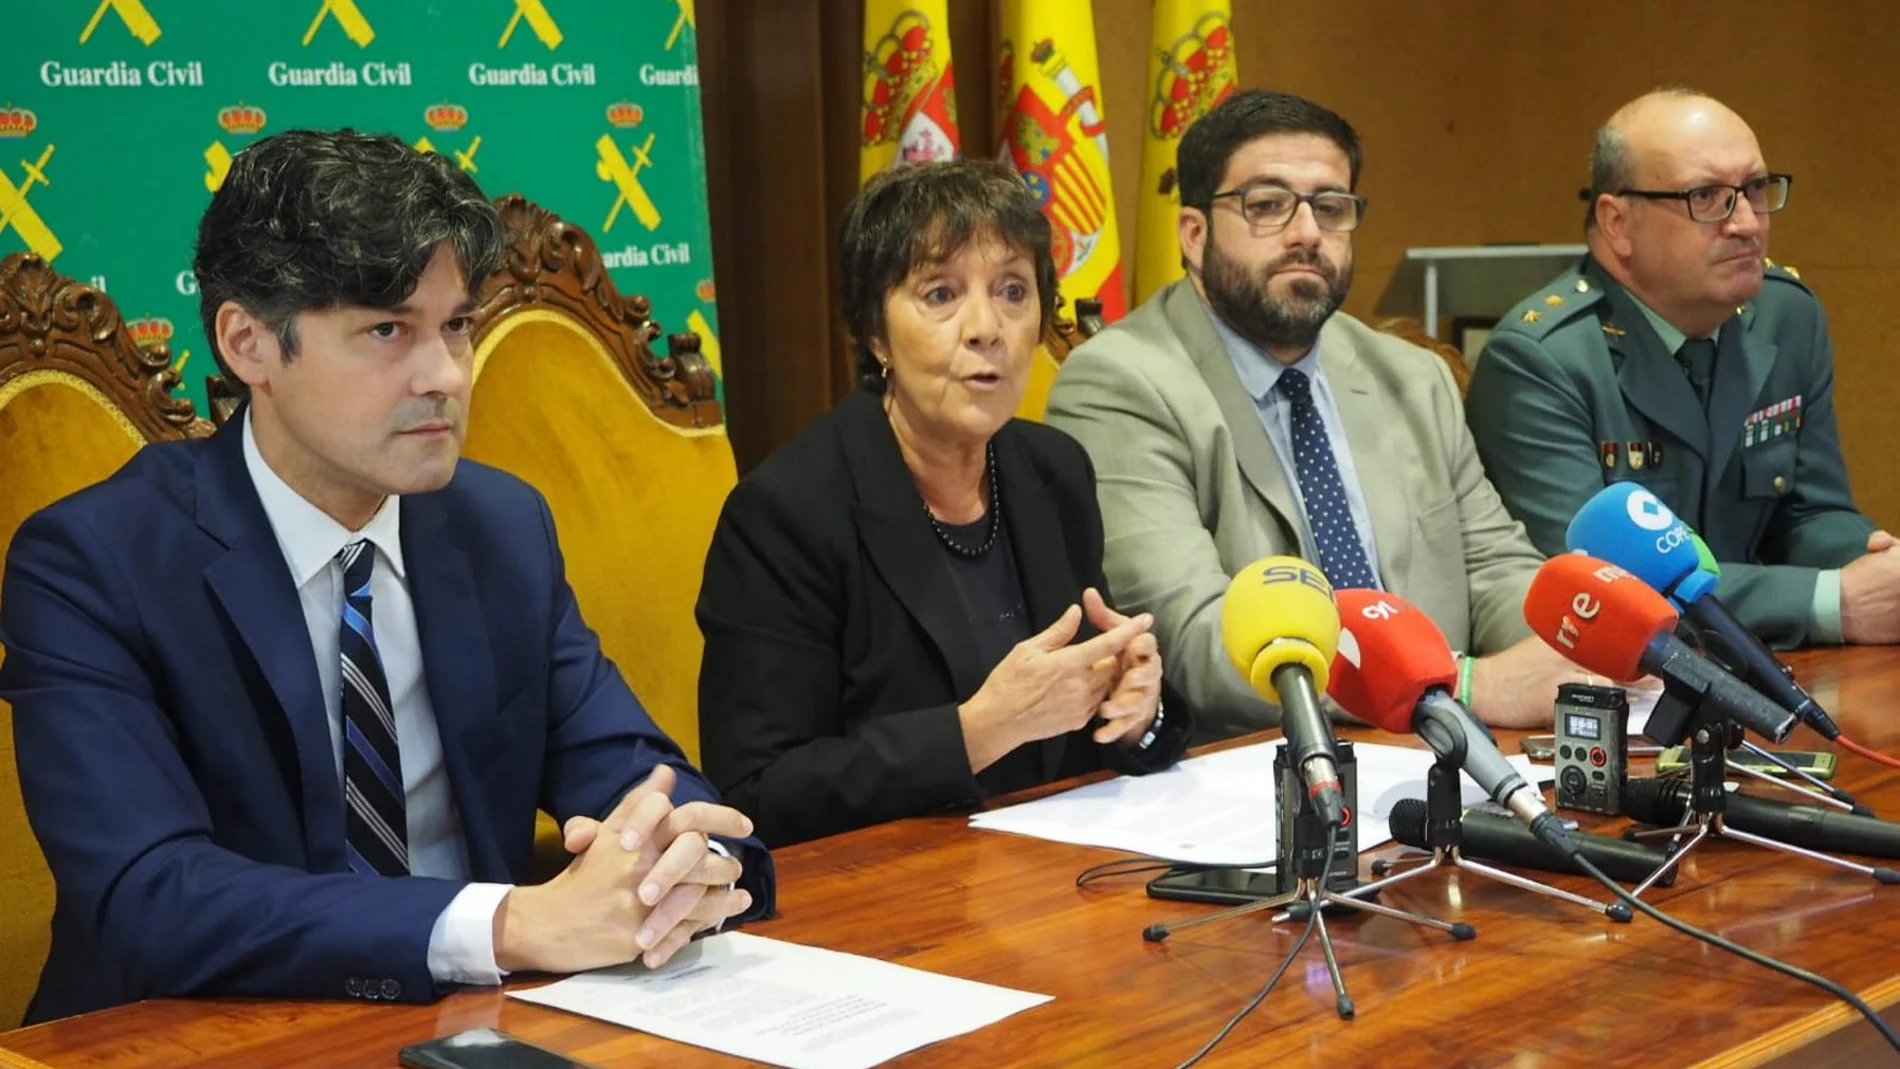 La delegada del Gobierno en la Comunidad, Mercedes Martín, junto al alcalde de la ciudad, Jesús Manuel Sánchez Cabrera, en la presentación